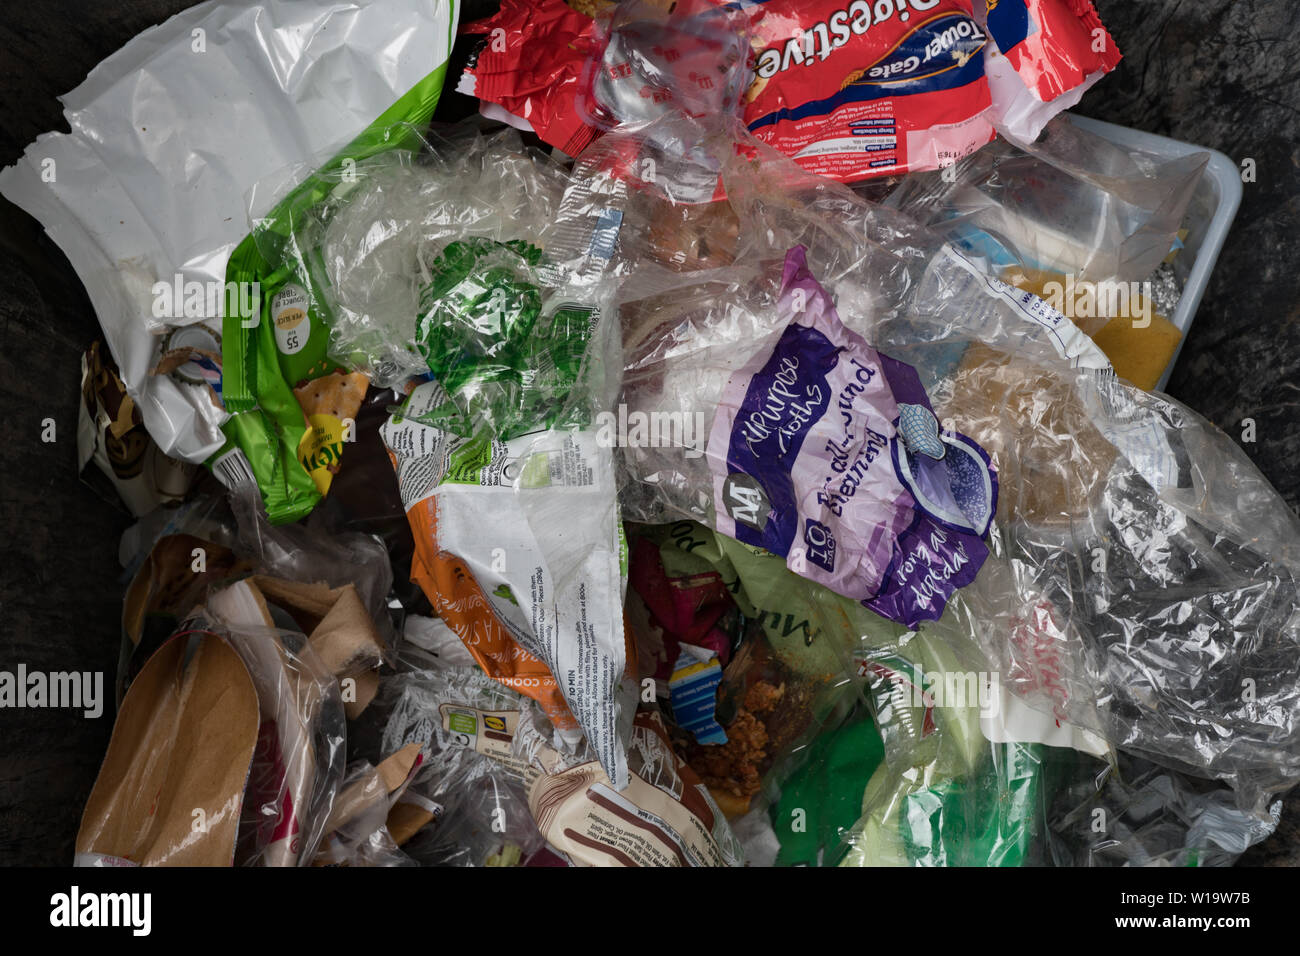 Les ordures non recyclables, mailny emballages alimentaires en plastique, dans le bac des ménages. UK Banque D'Images